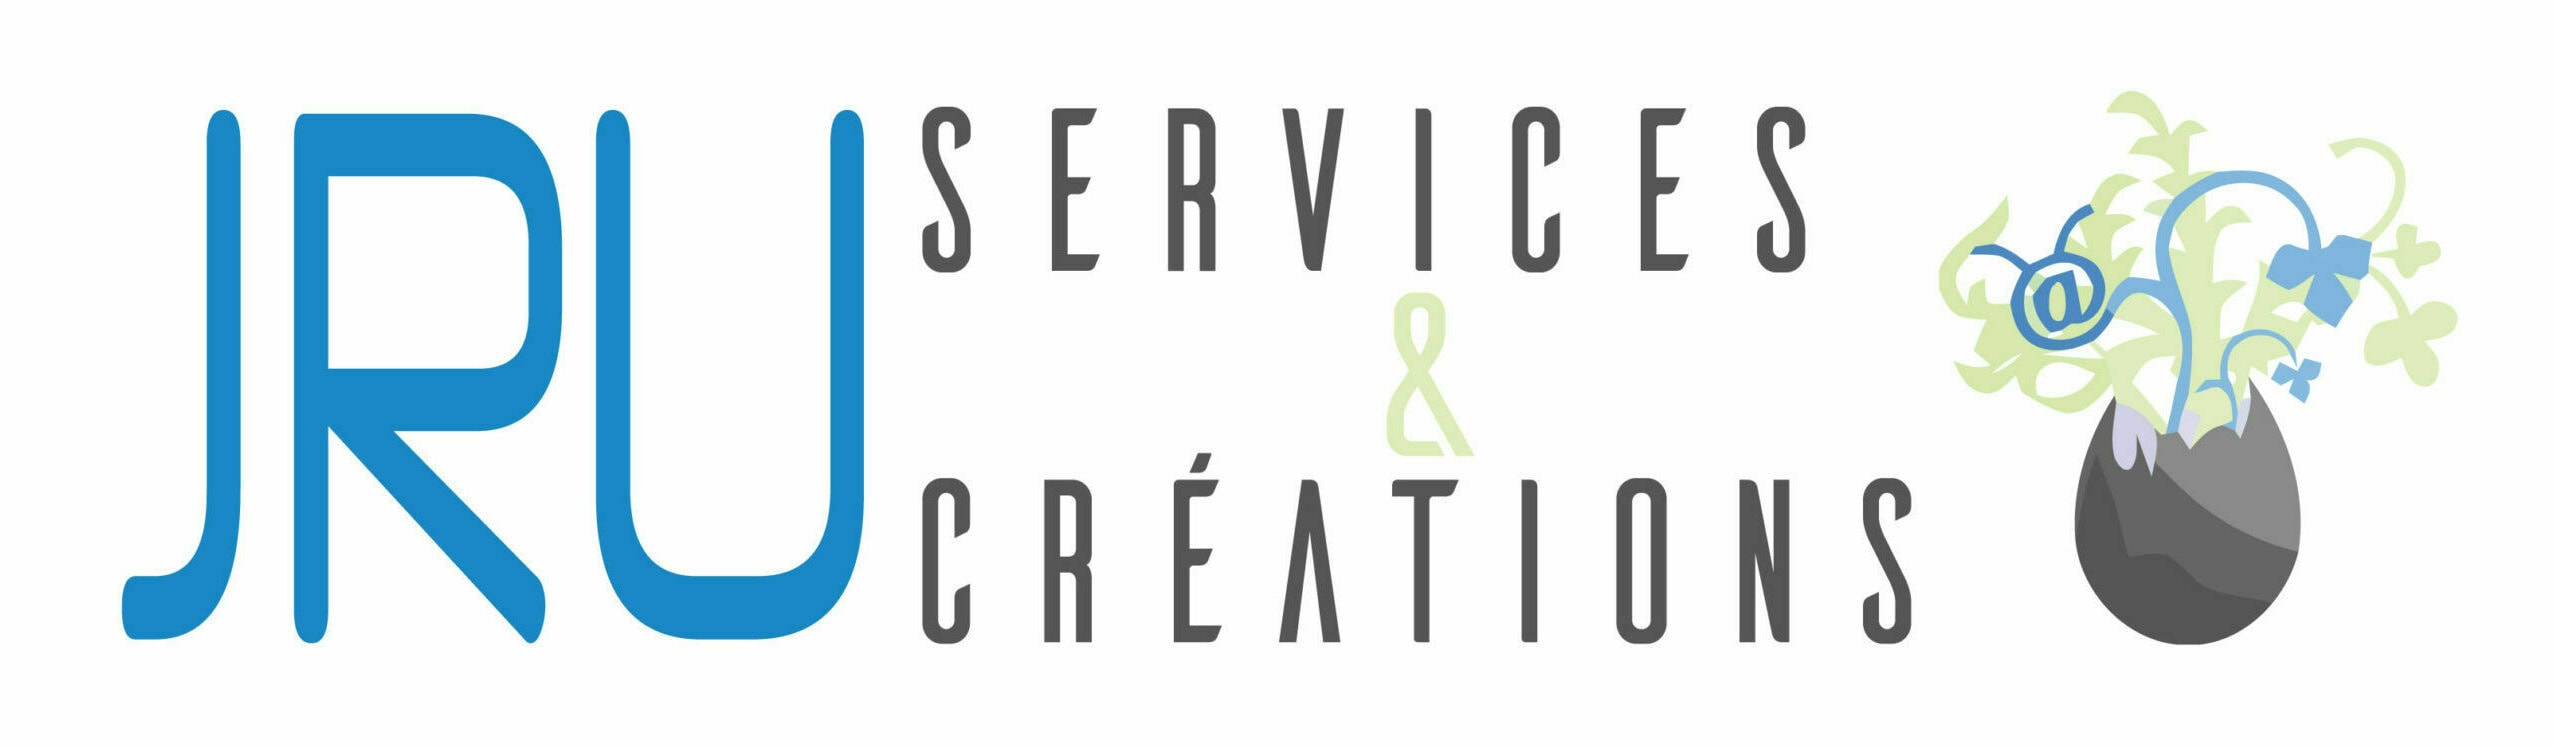 Logo JRU Services